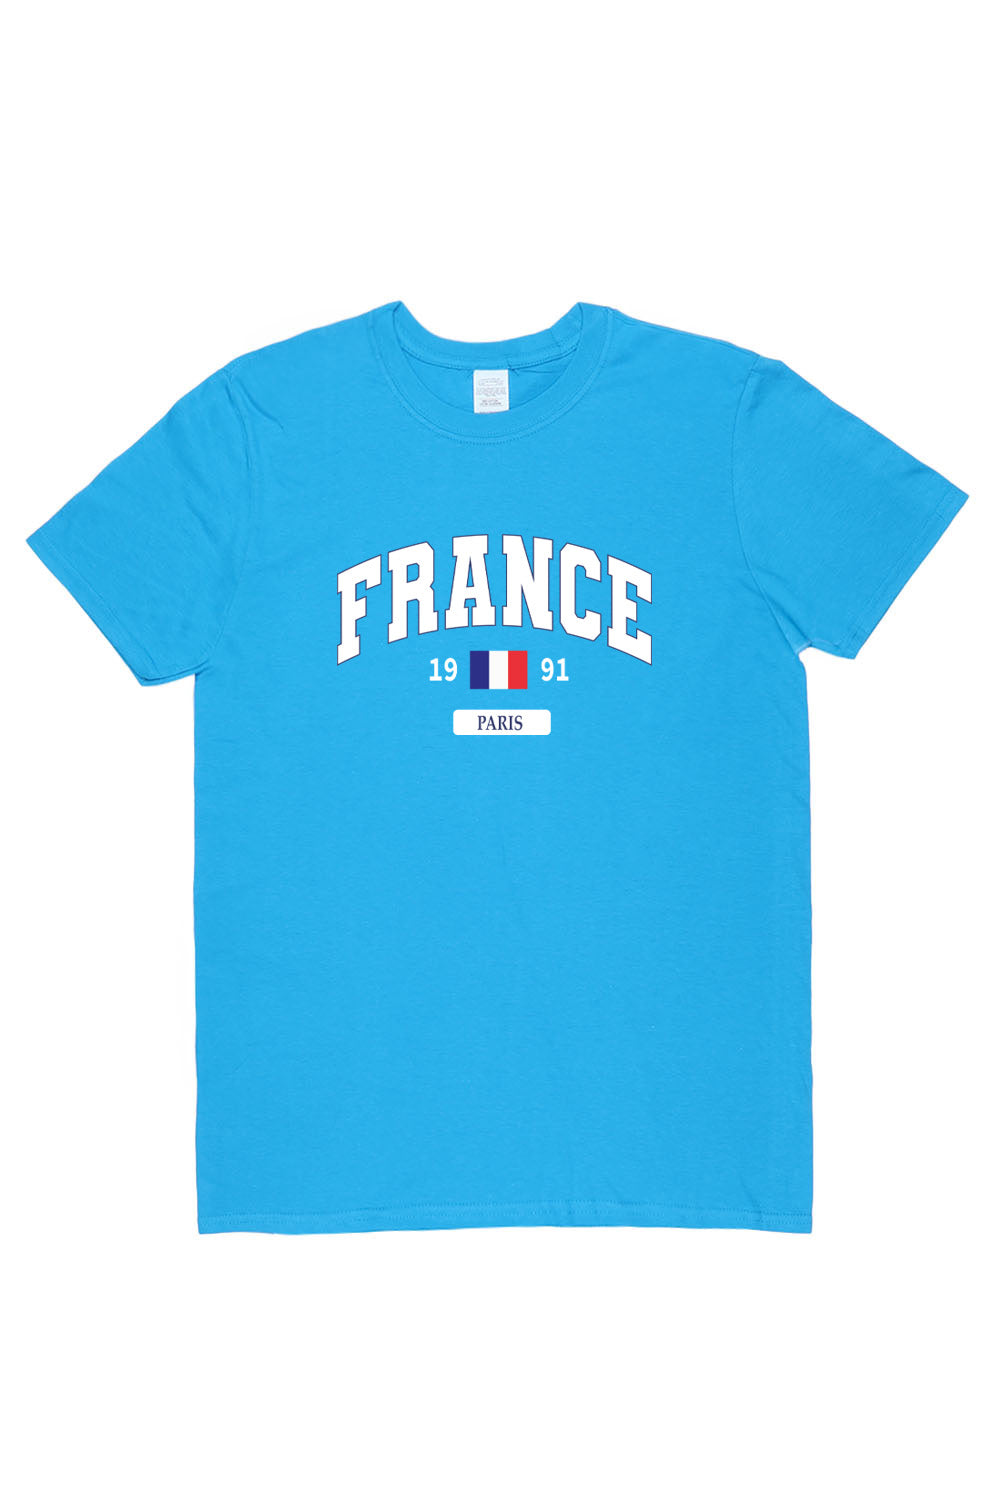 France T-Shirt in Sapphire Blue (Custom Packs)